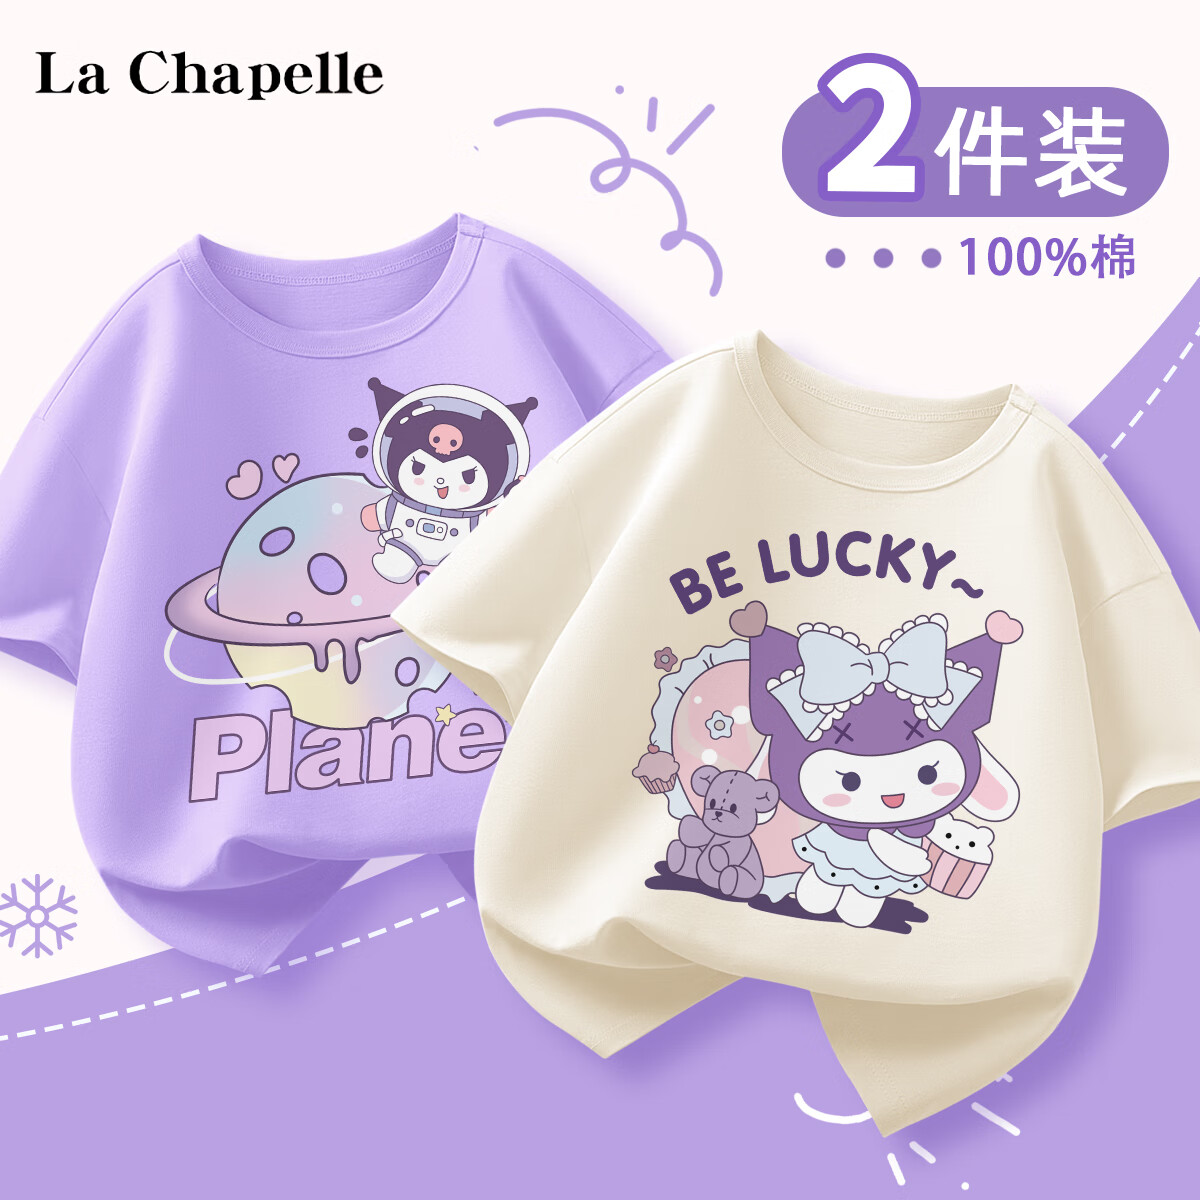 LA CHAPELLE HOMME La Chapelle 儿童纯棉短袖t恤 2件 券后32.9元